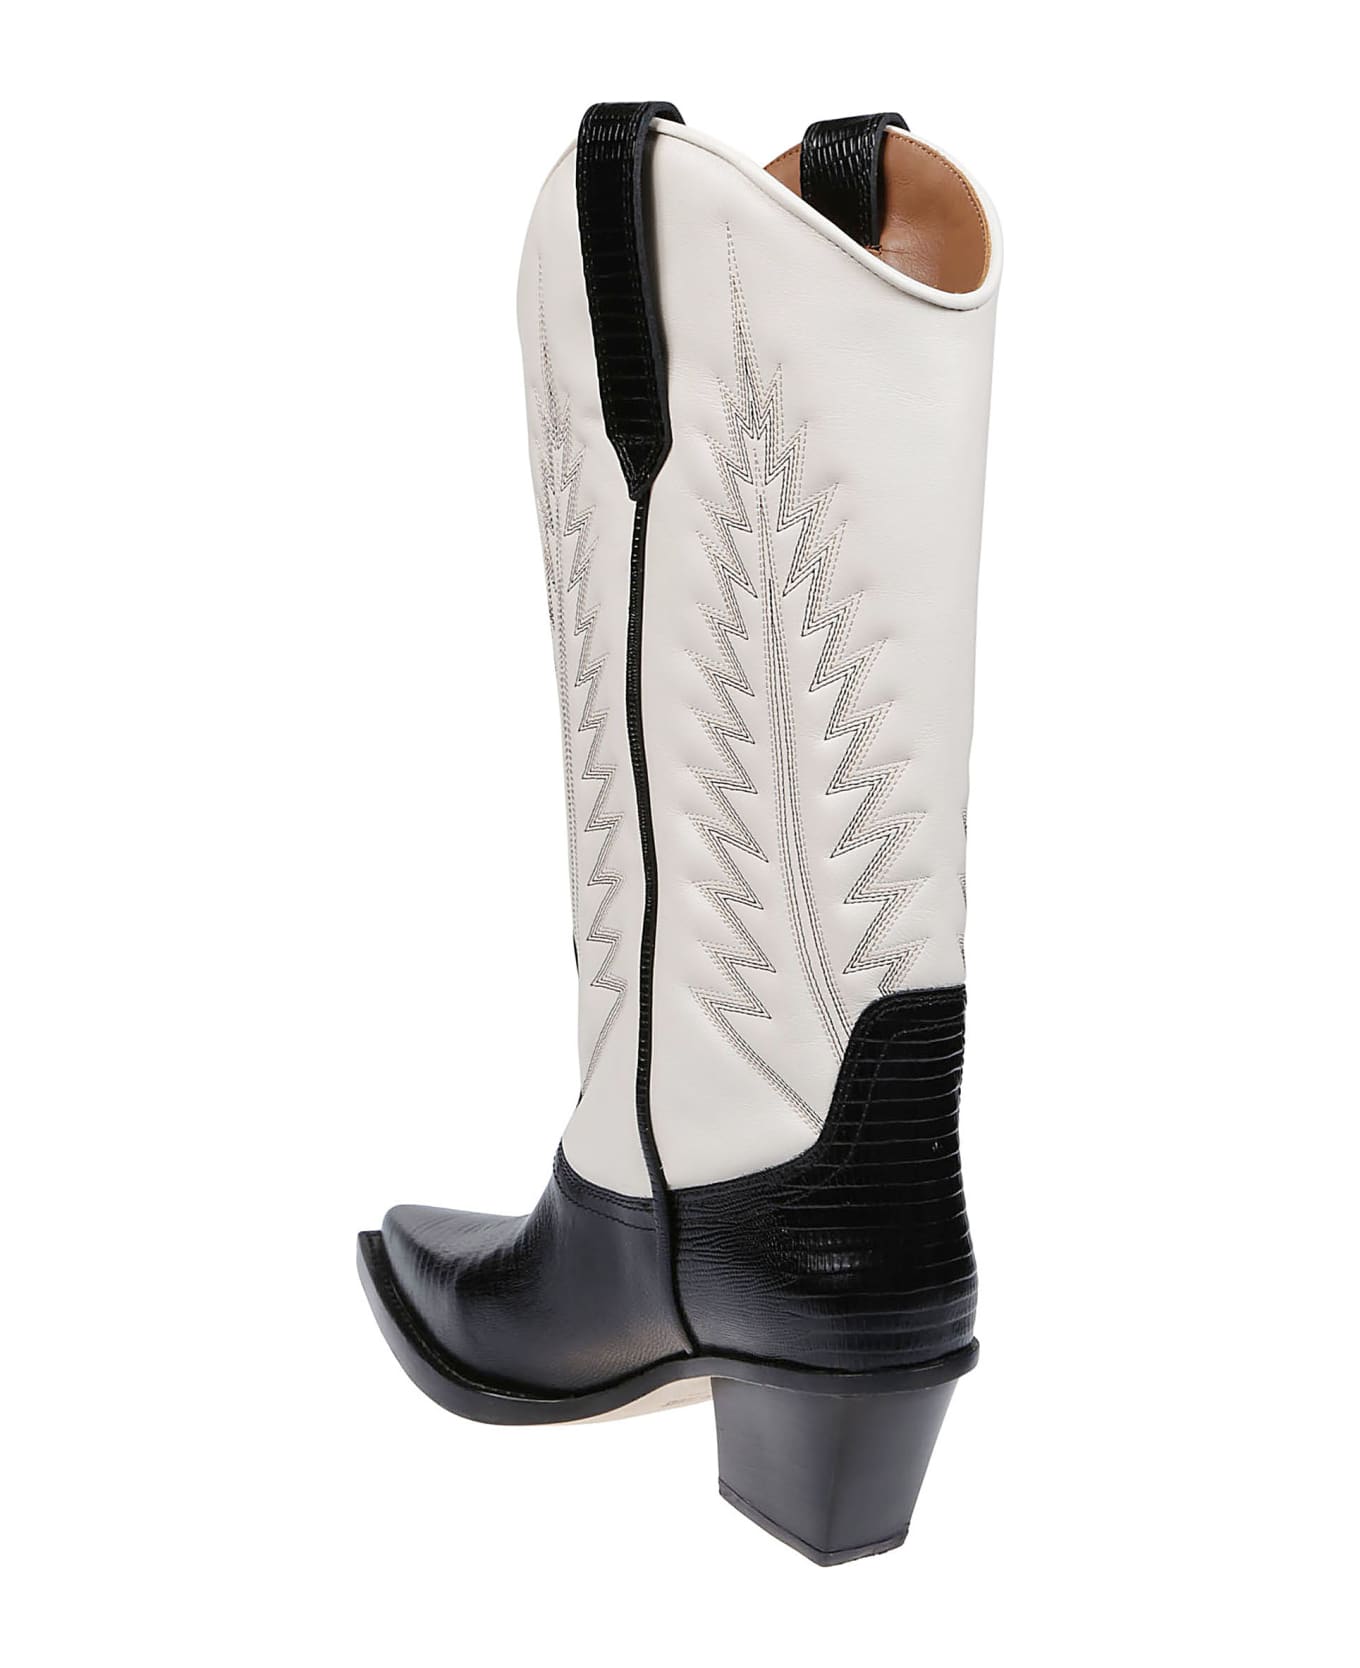 Paris Texas Rosario Boots - Black/bone